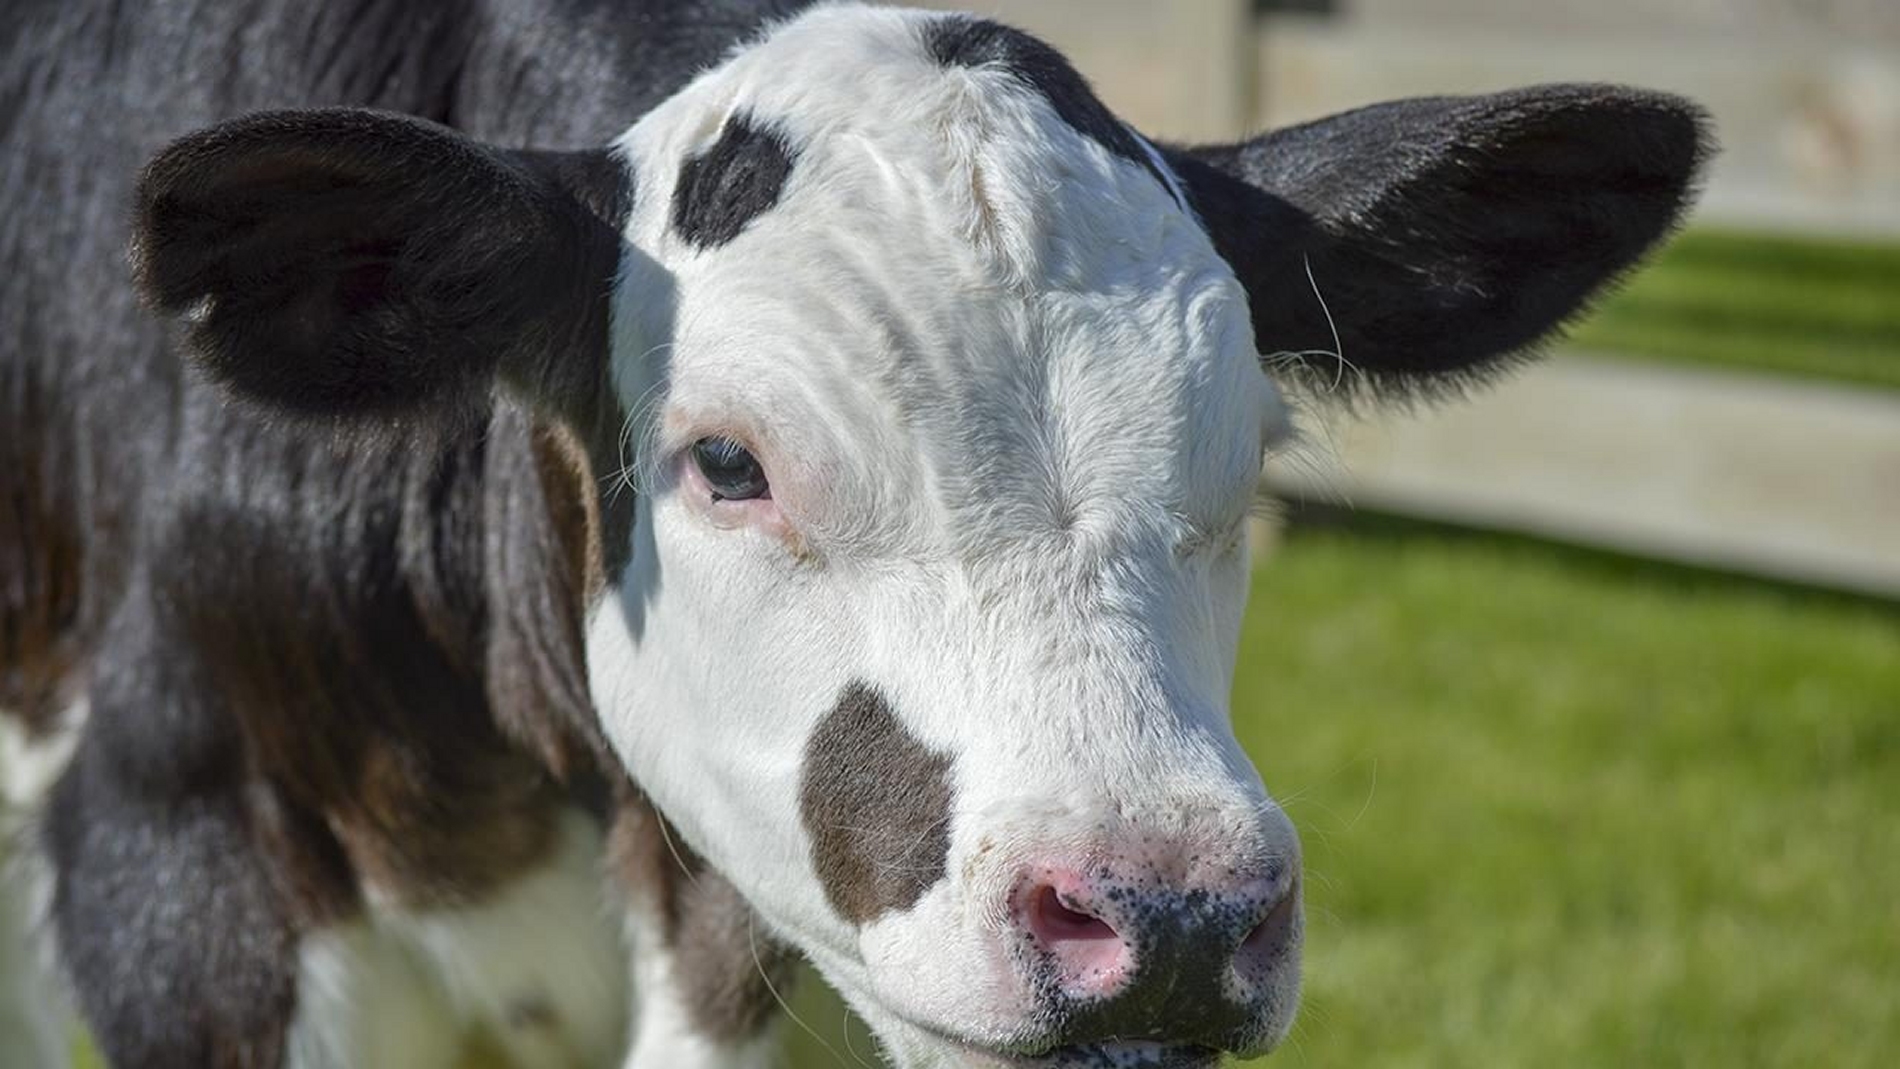 Les vaches dépourvues de cornes sont appréciées de beaucoup d'éleveurs. Depuis des années, des croisements cherchent à étendre ce caractère à des races exploitées. Mais des généticiens veulent aller plus vite en insérant eux-mêmes le gène dans les cellules de l'embryon. Spotigy, un veau de deux mois ici en photo, est issu de cette expérience. © Cornell Alliance for Science